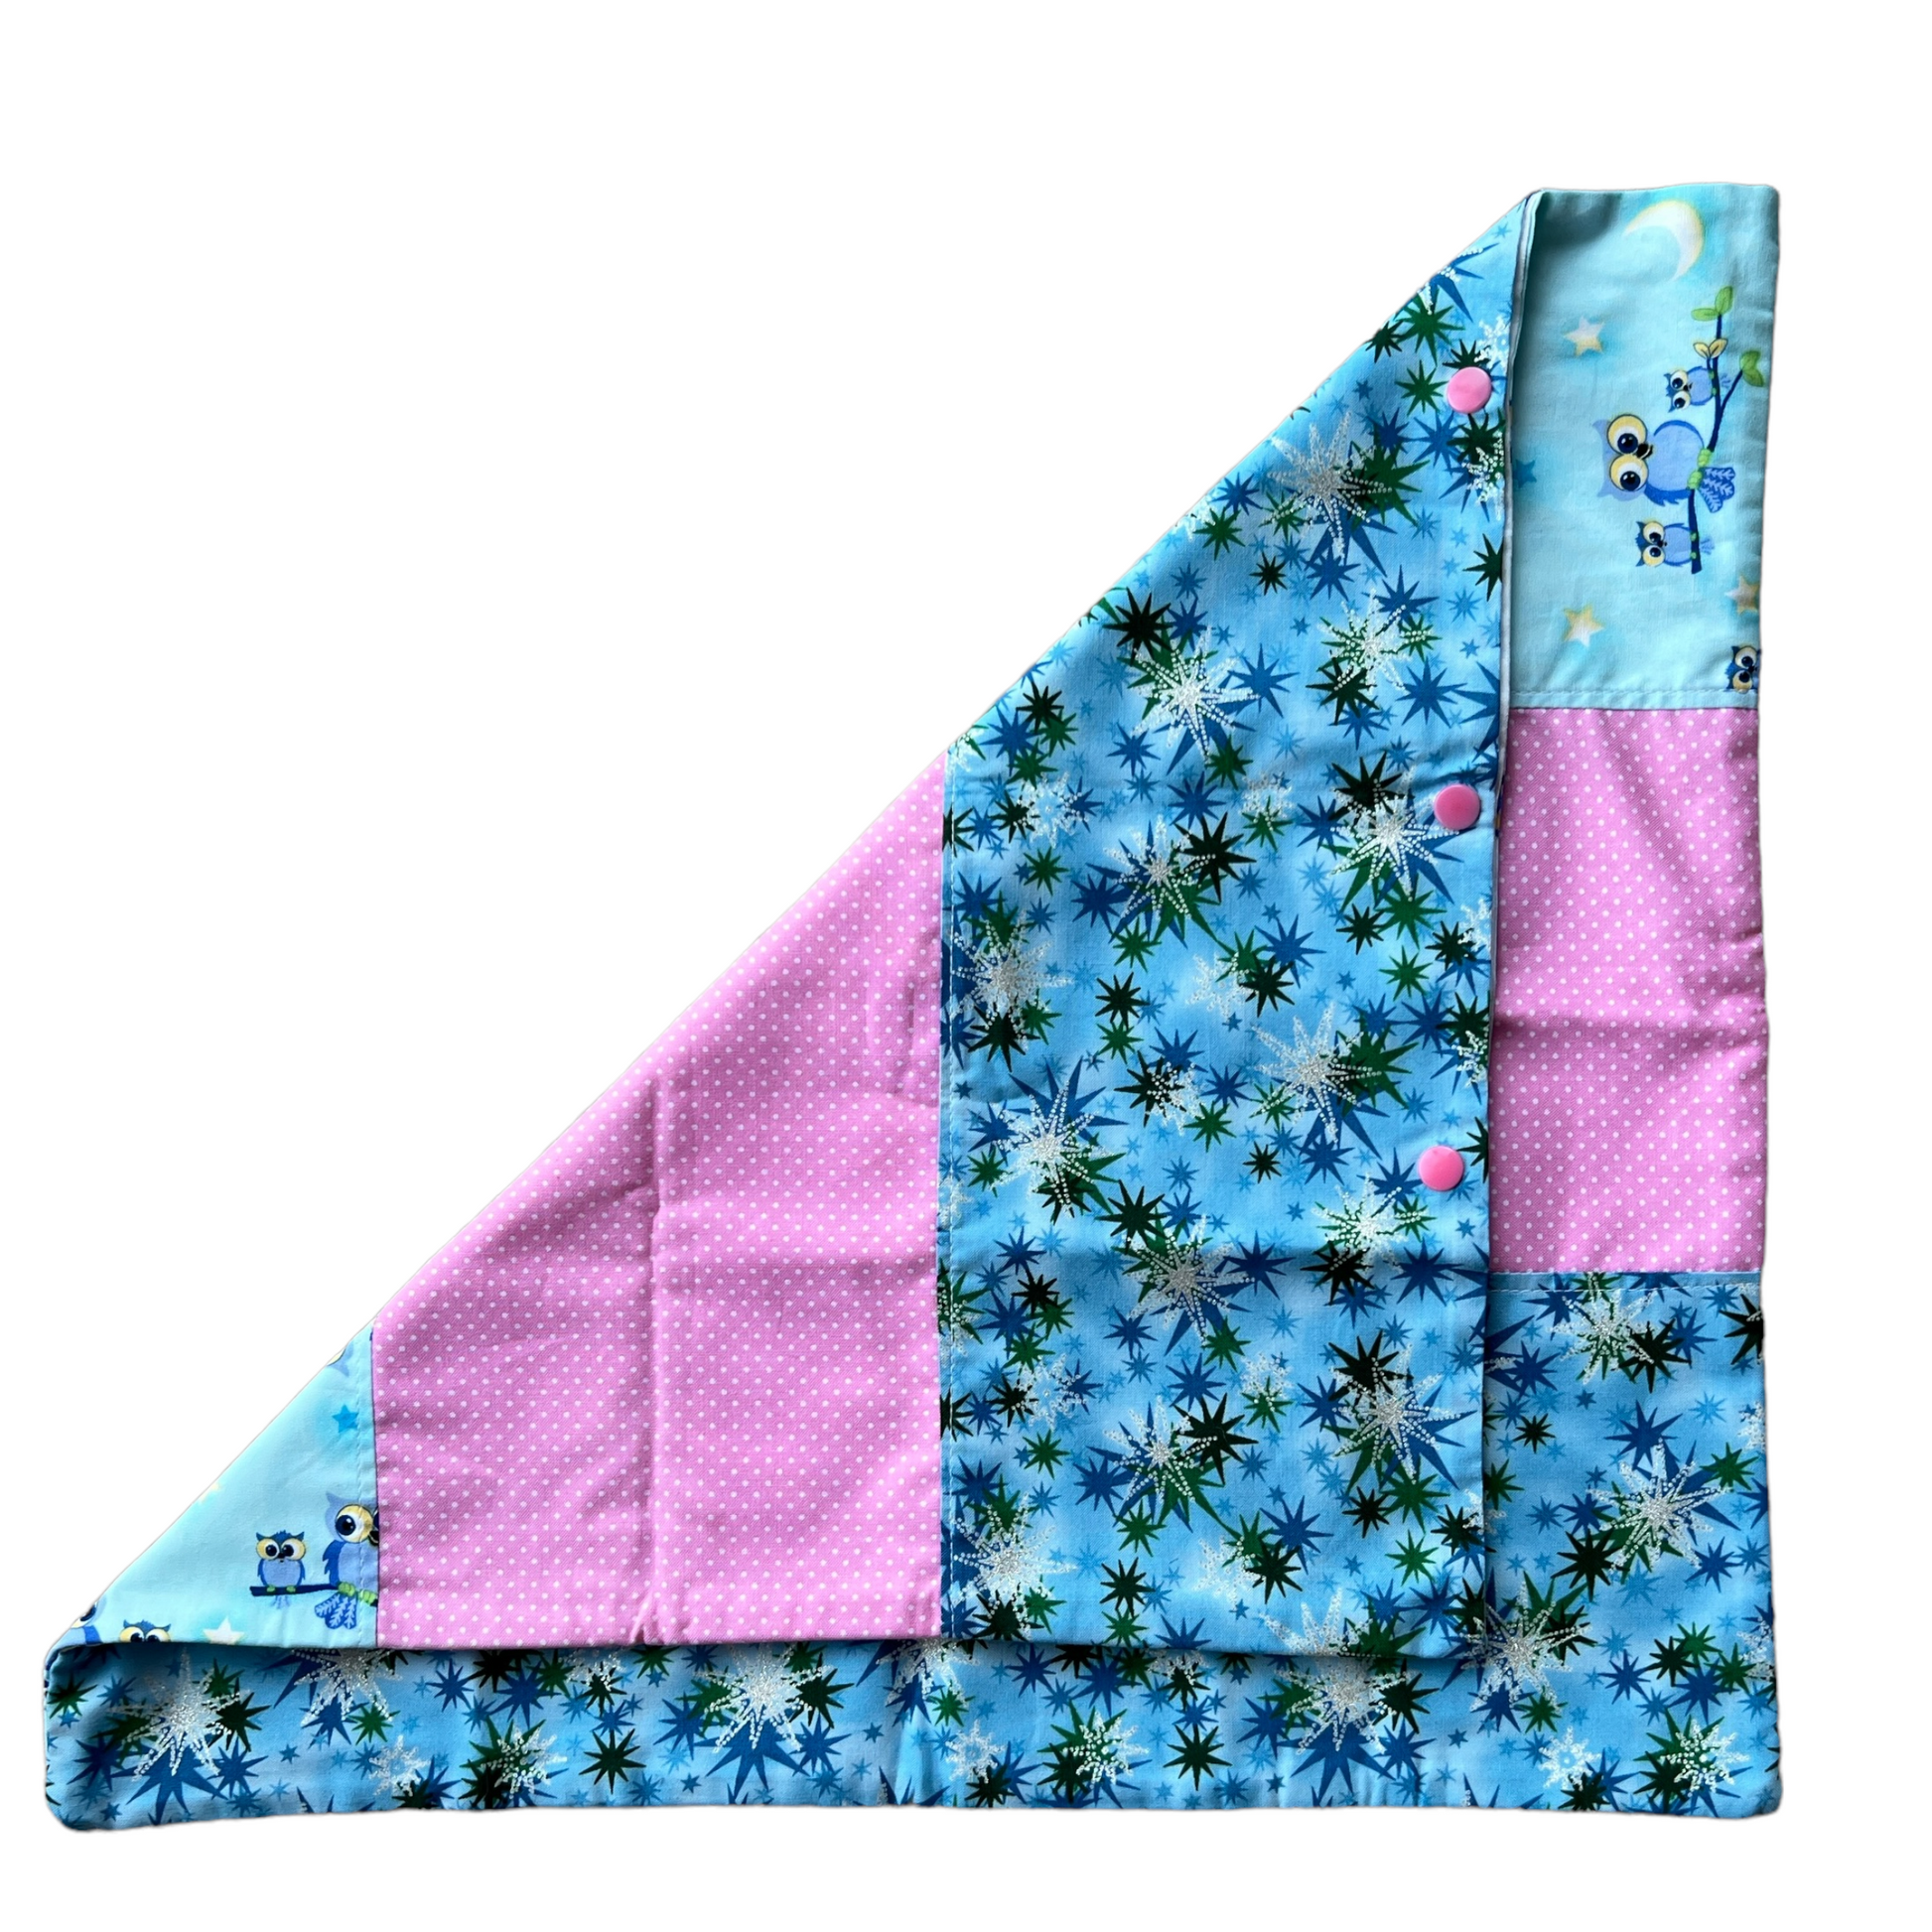 Reusable Cotton Nappy Bags  Splash Quilting Blue birds / Square Design  